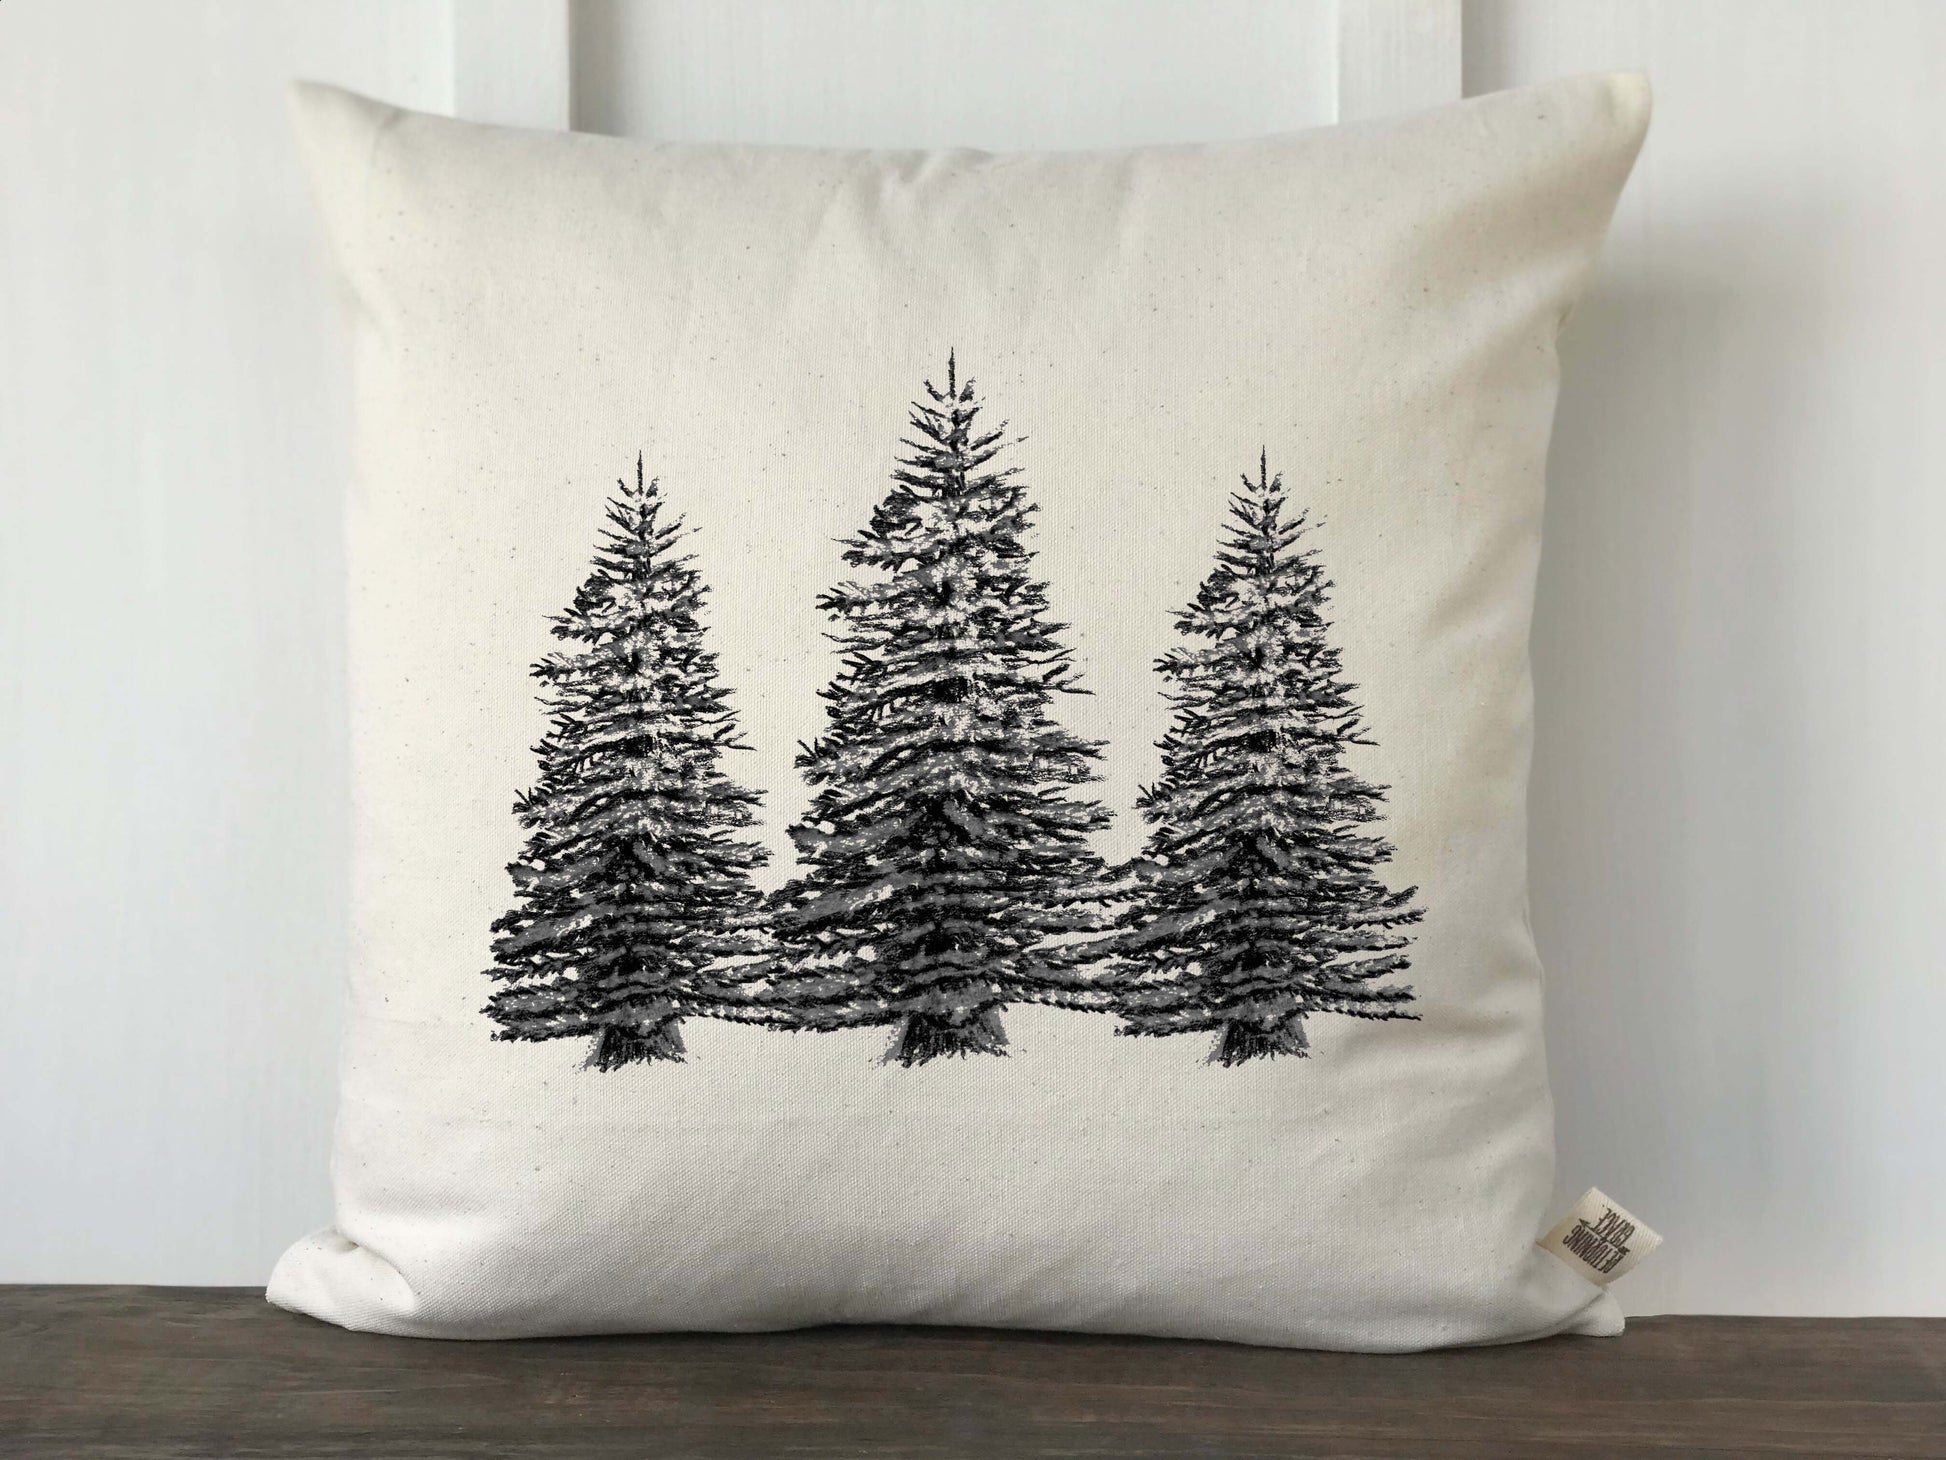 Christmas Trees Original Artwork Pillow Cover - Returning Grace Designs